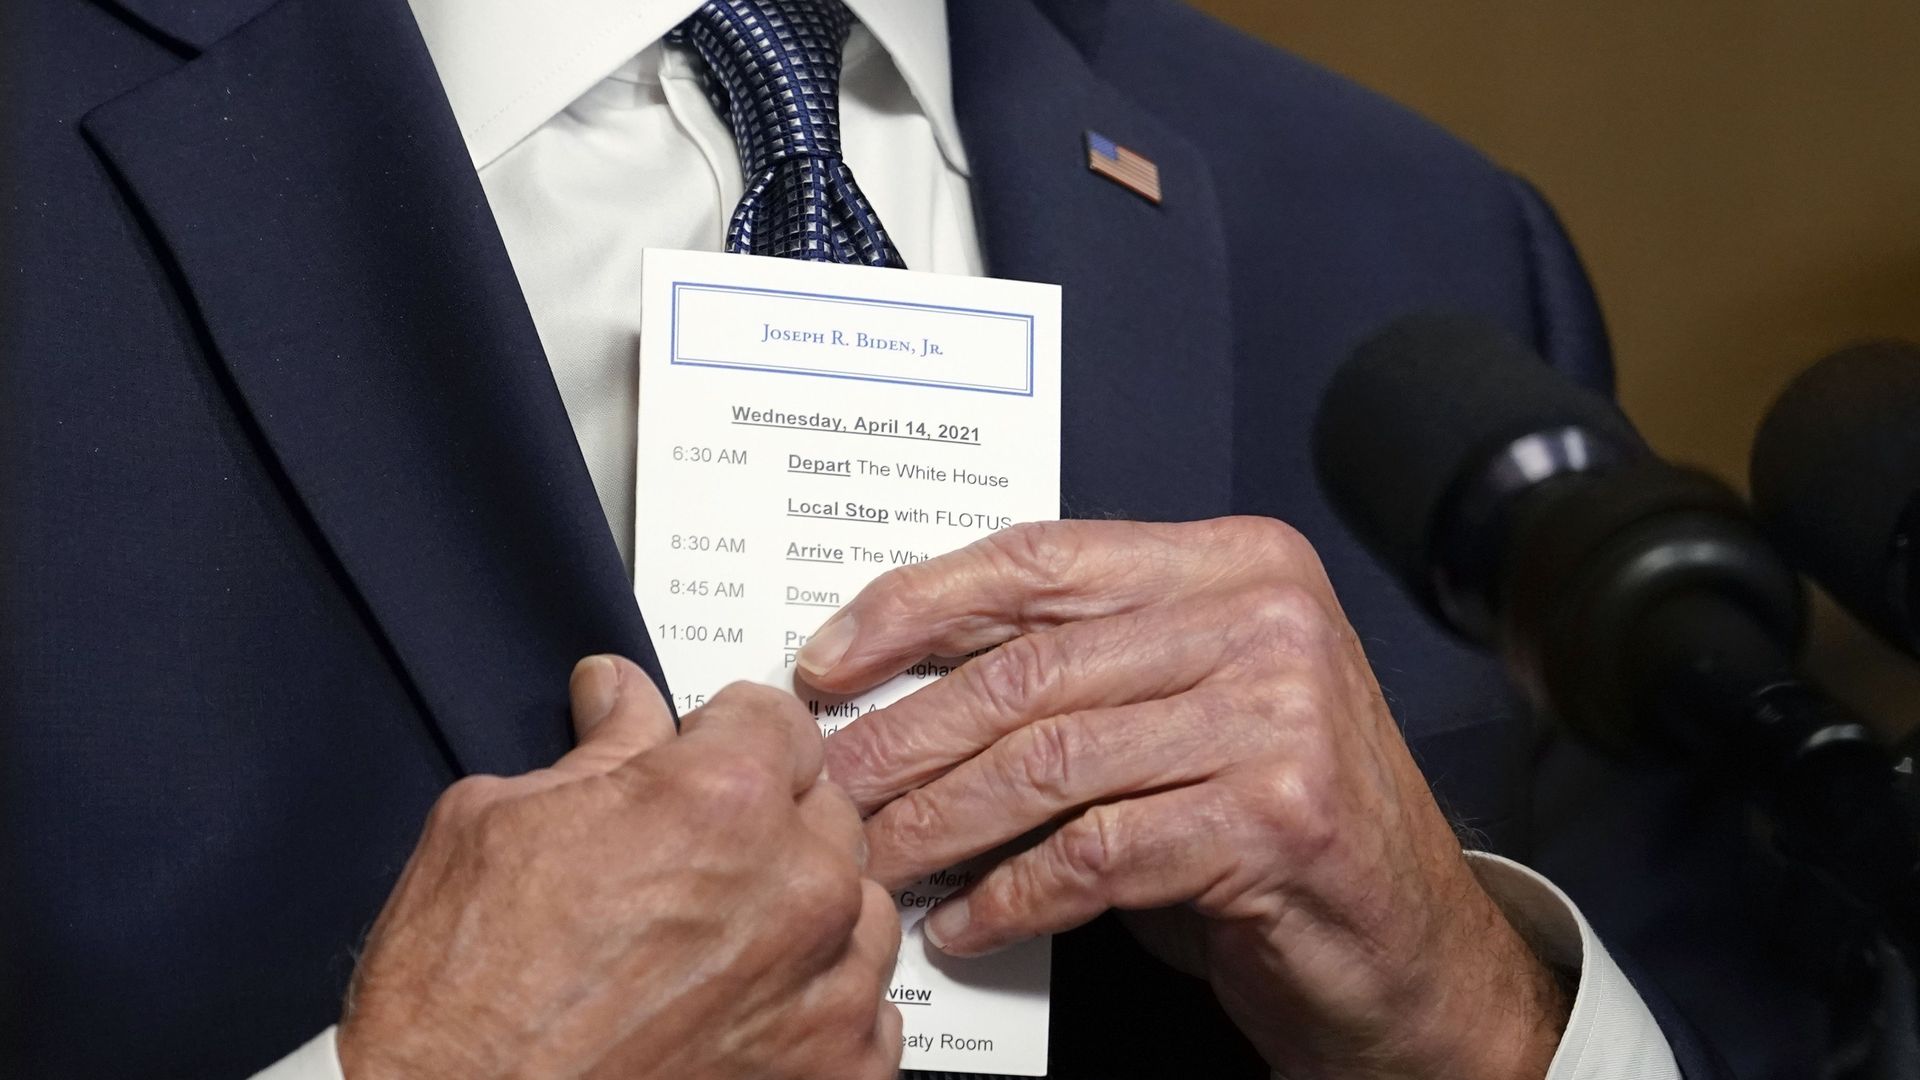 Biden holding an itinerary